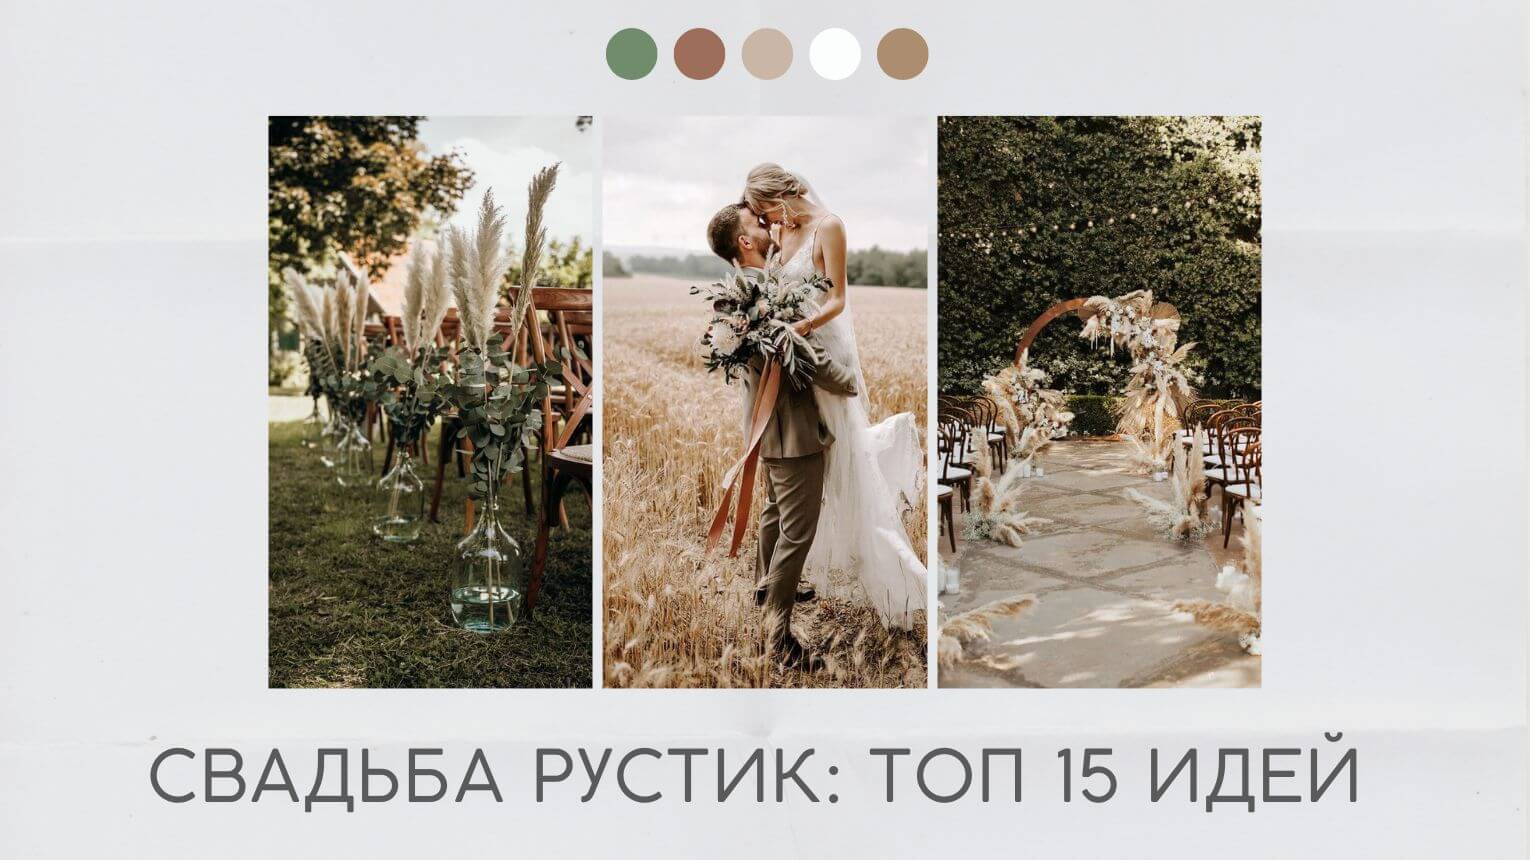 Оформление свадьбы в стиле рустик — фото